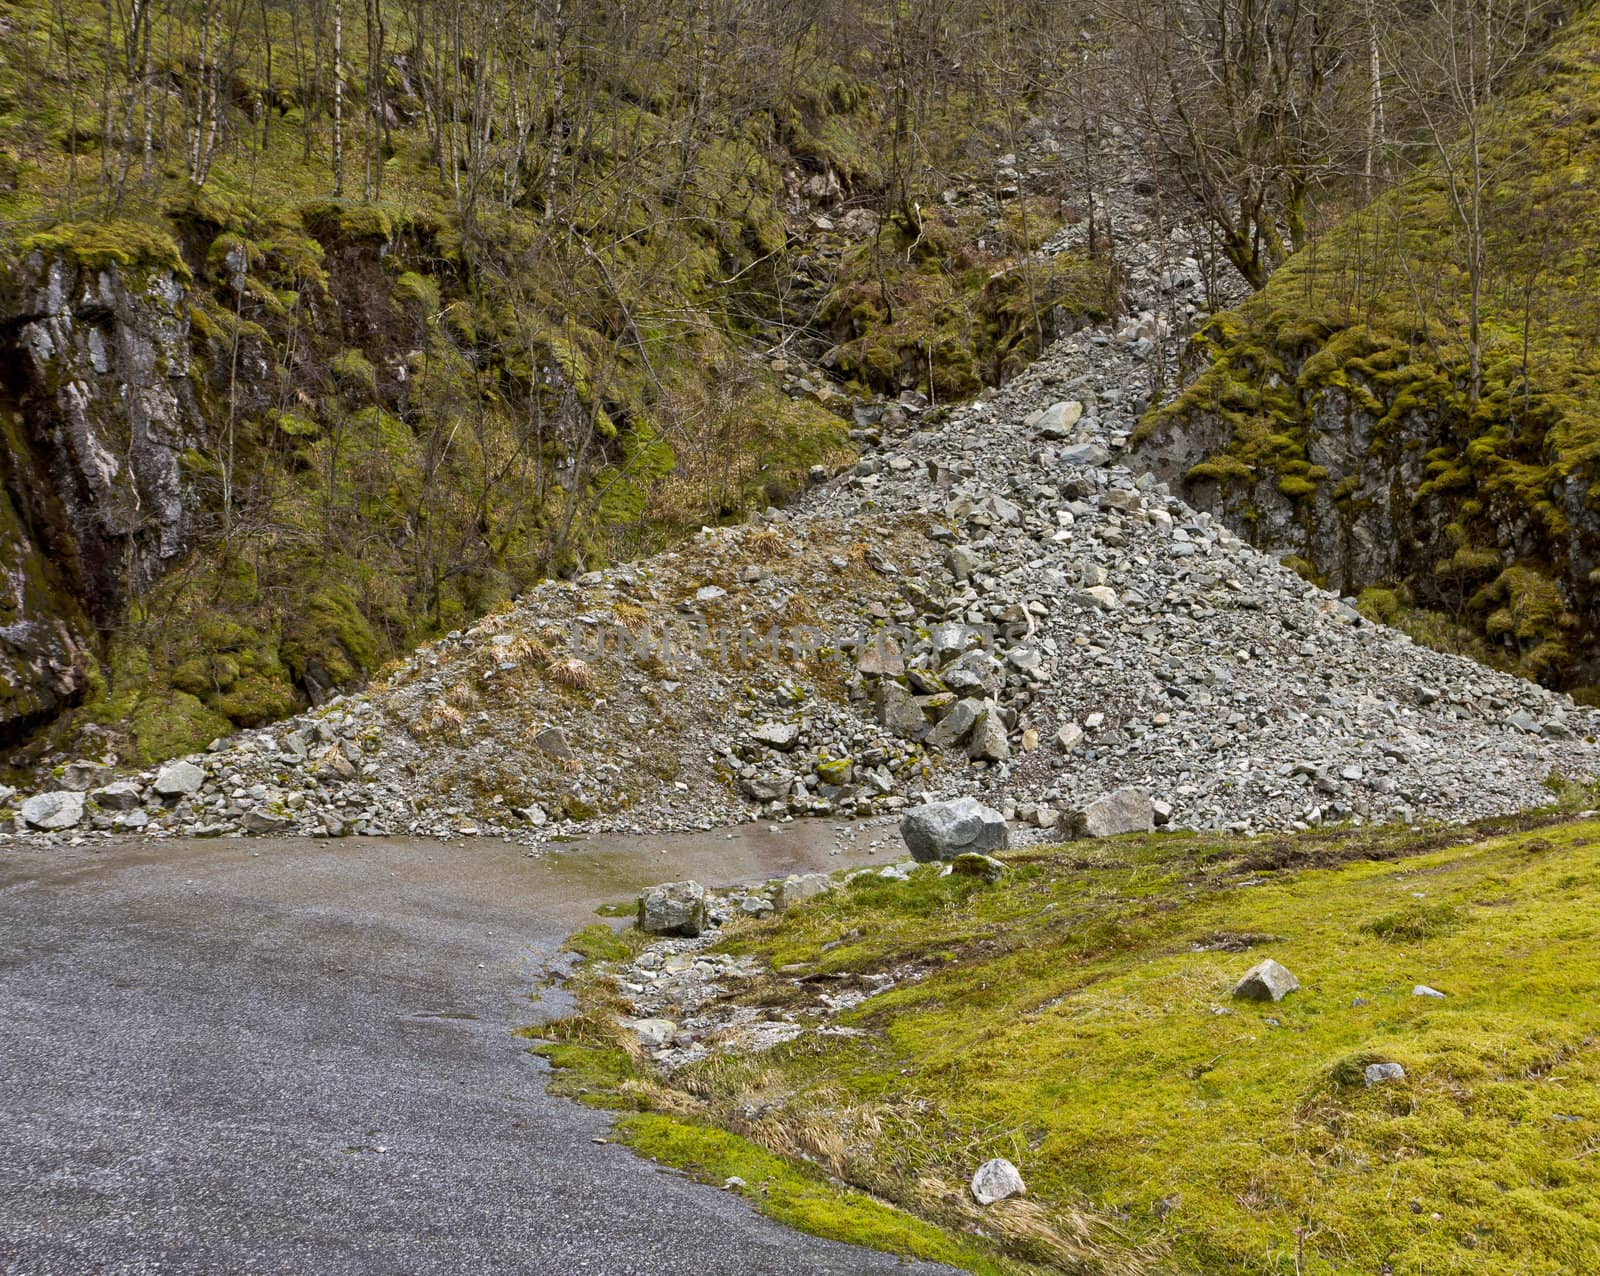 unused, run-down road in rural landscape with landslide- norway